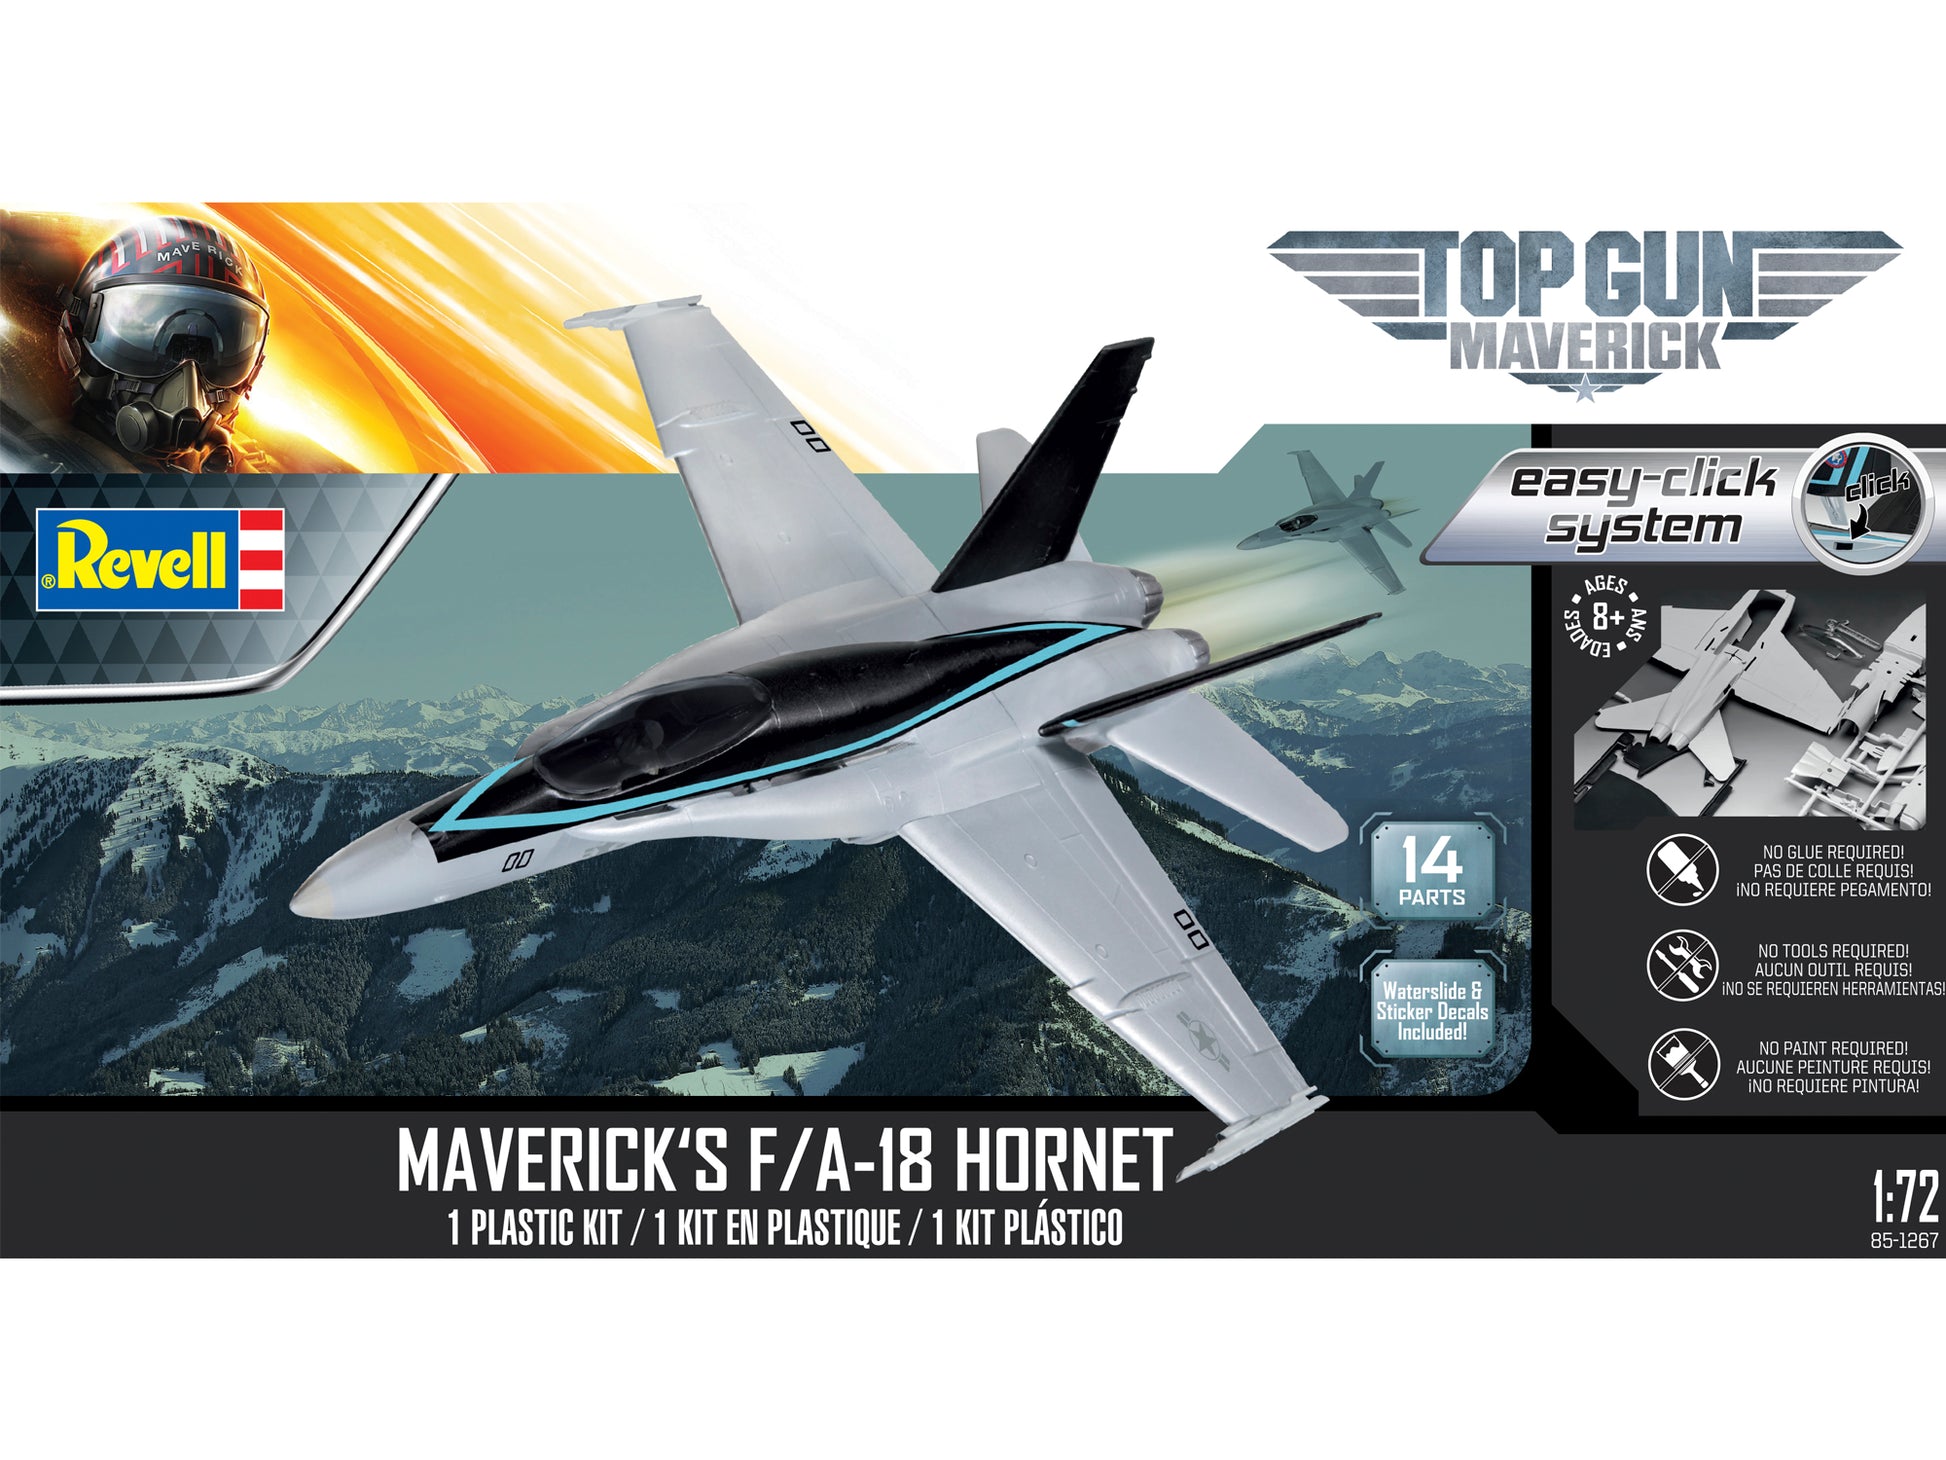 Maverick's F/A-18 Hornet 1/72 Easy-Click